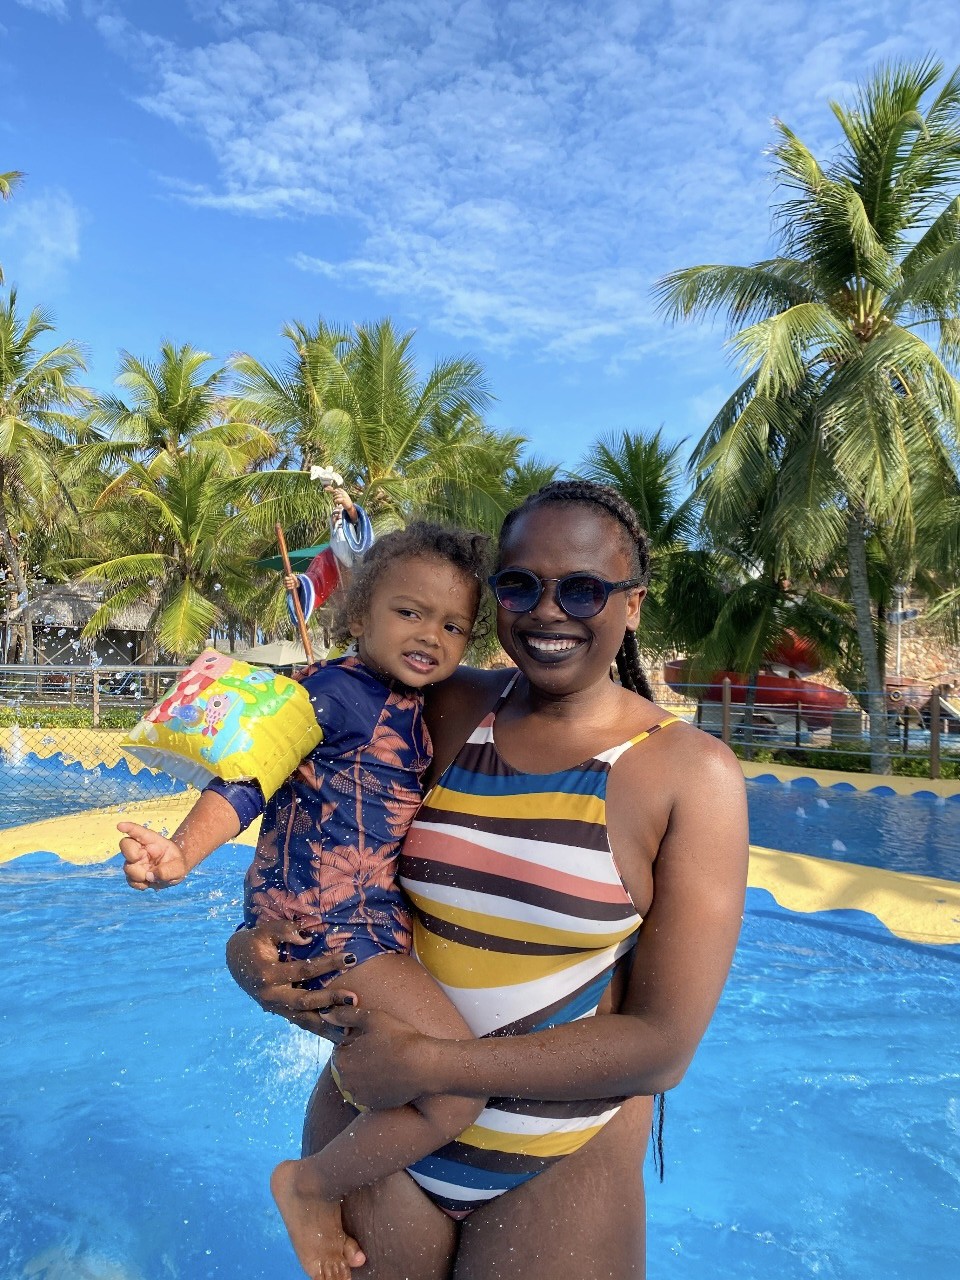 Luana Génot passou as férias em família no Beach Park, que fica a 25 km de Fortaleza (CE) (Foto: Divulgação)